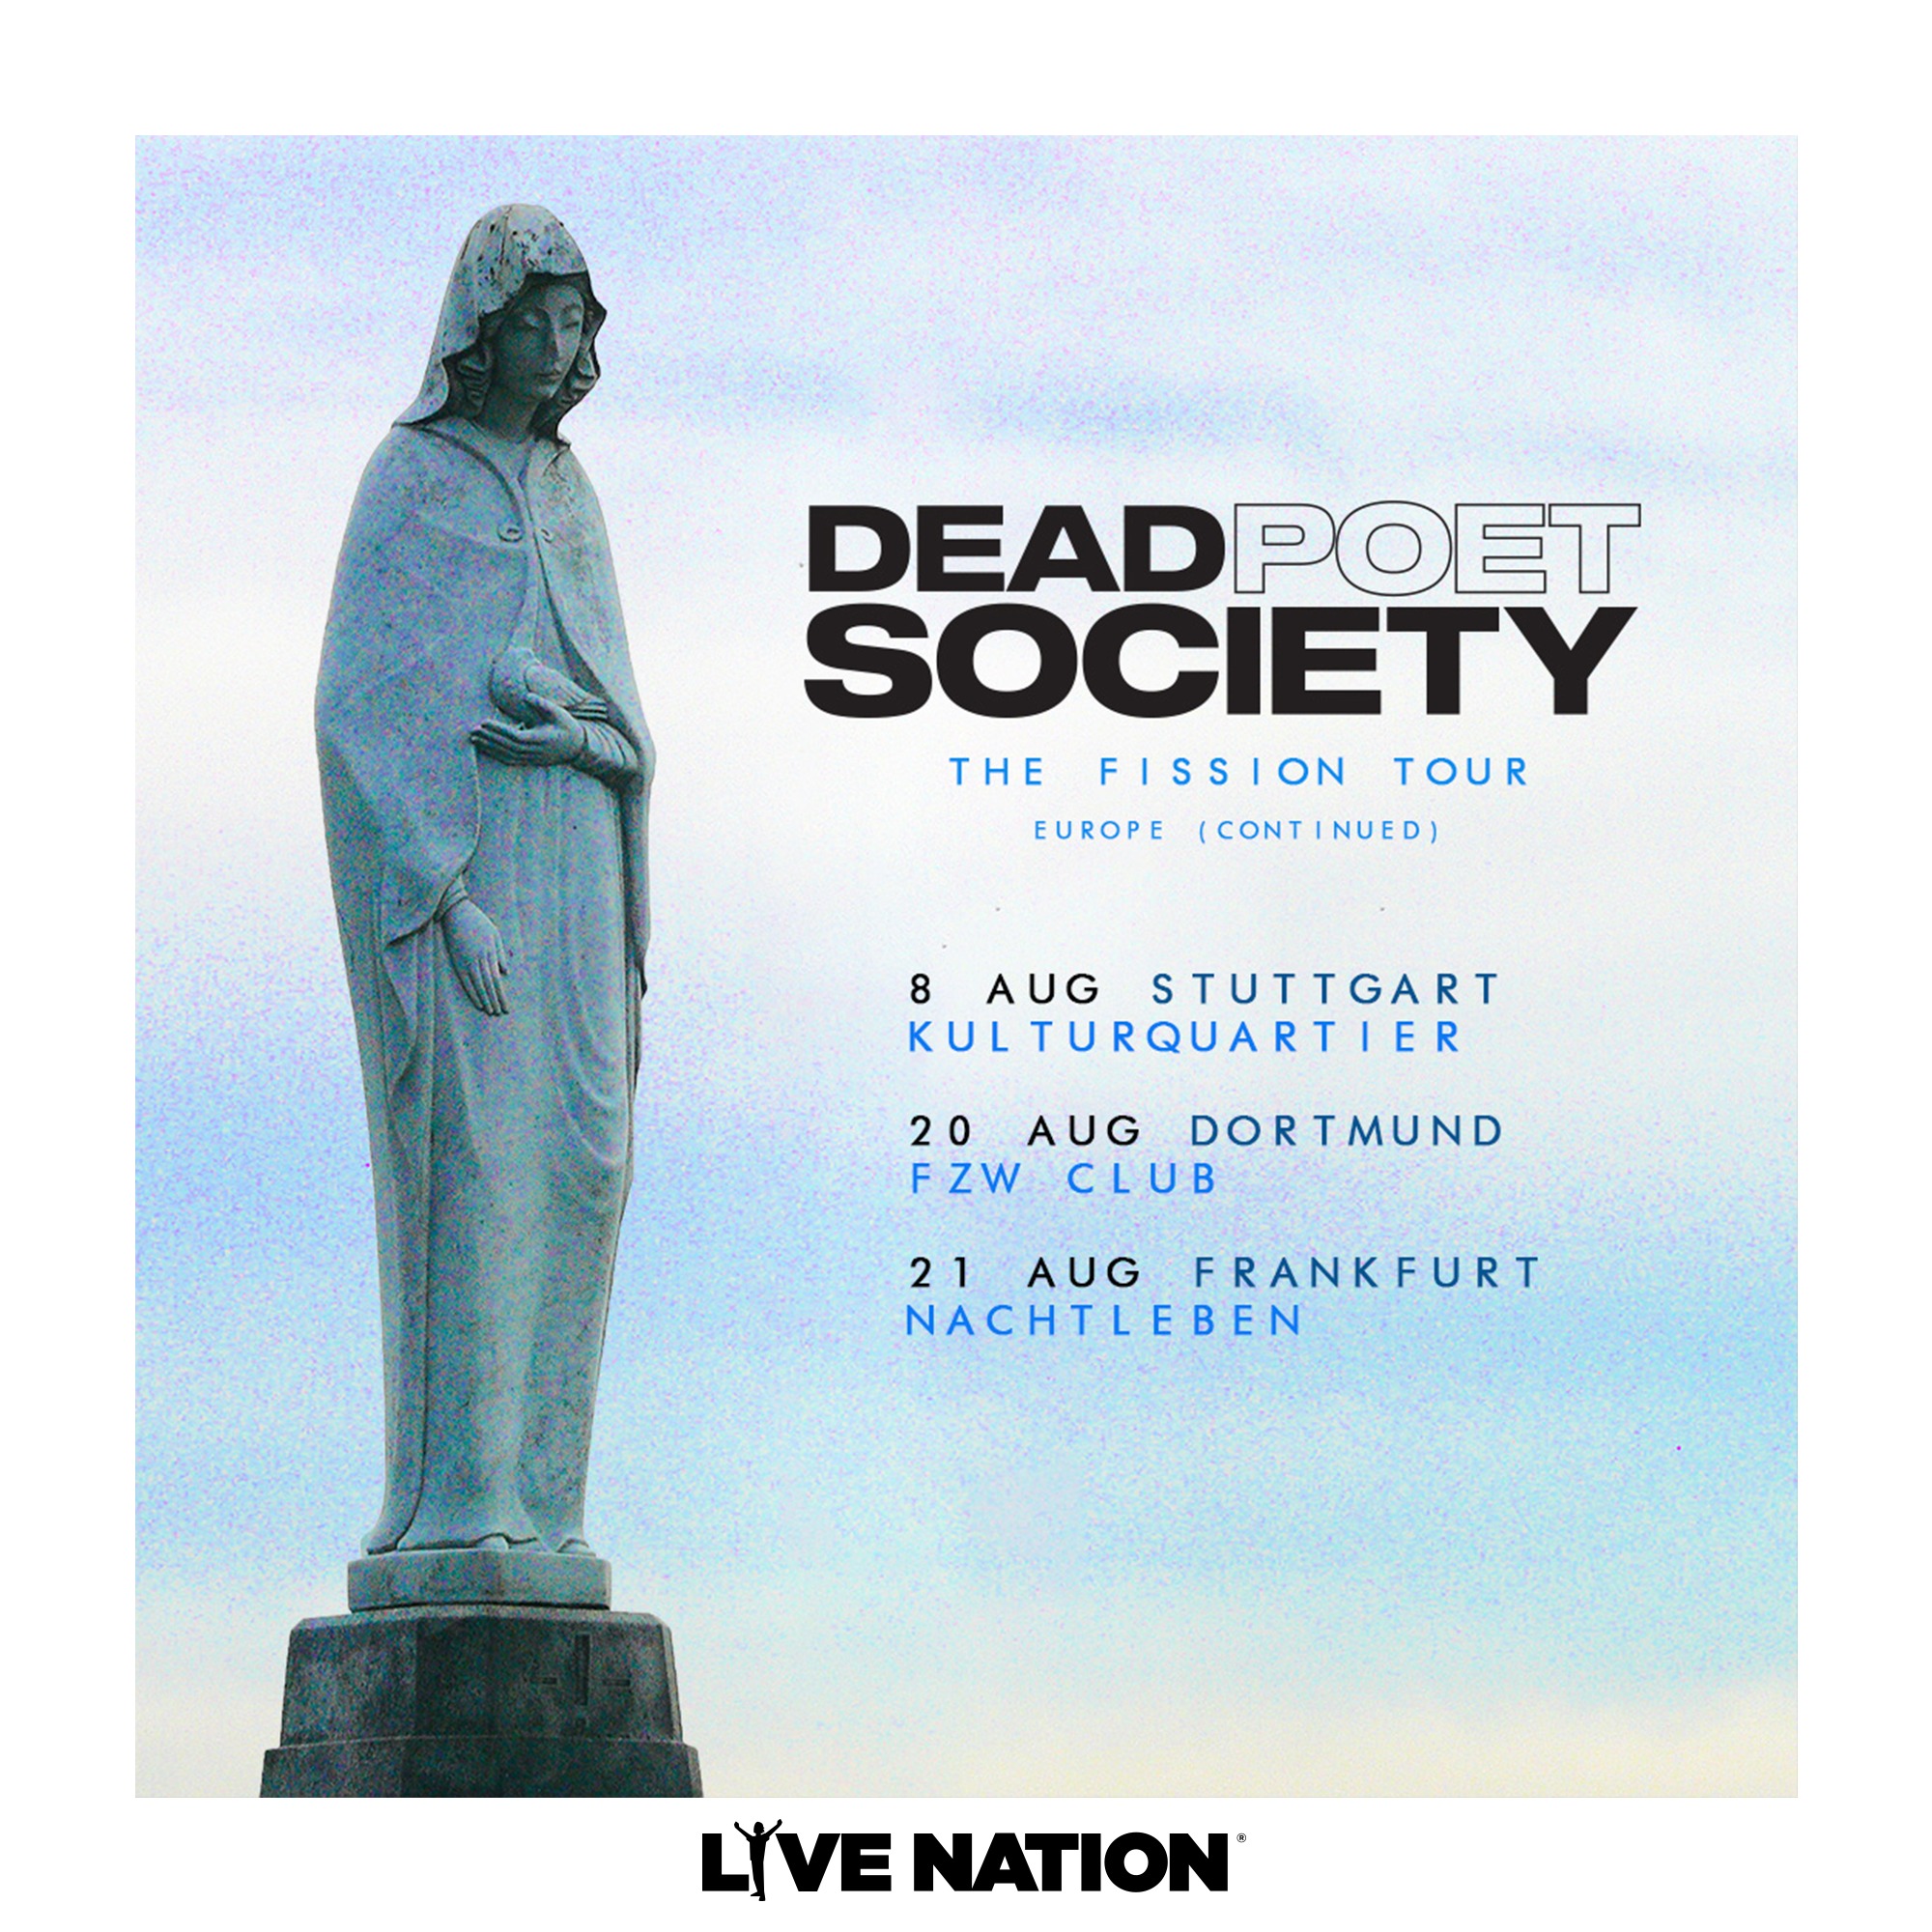 Dead Poet Society at Nachtleben Frankfurt Tickets